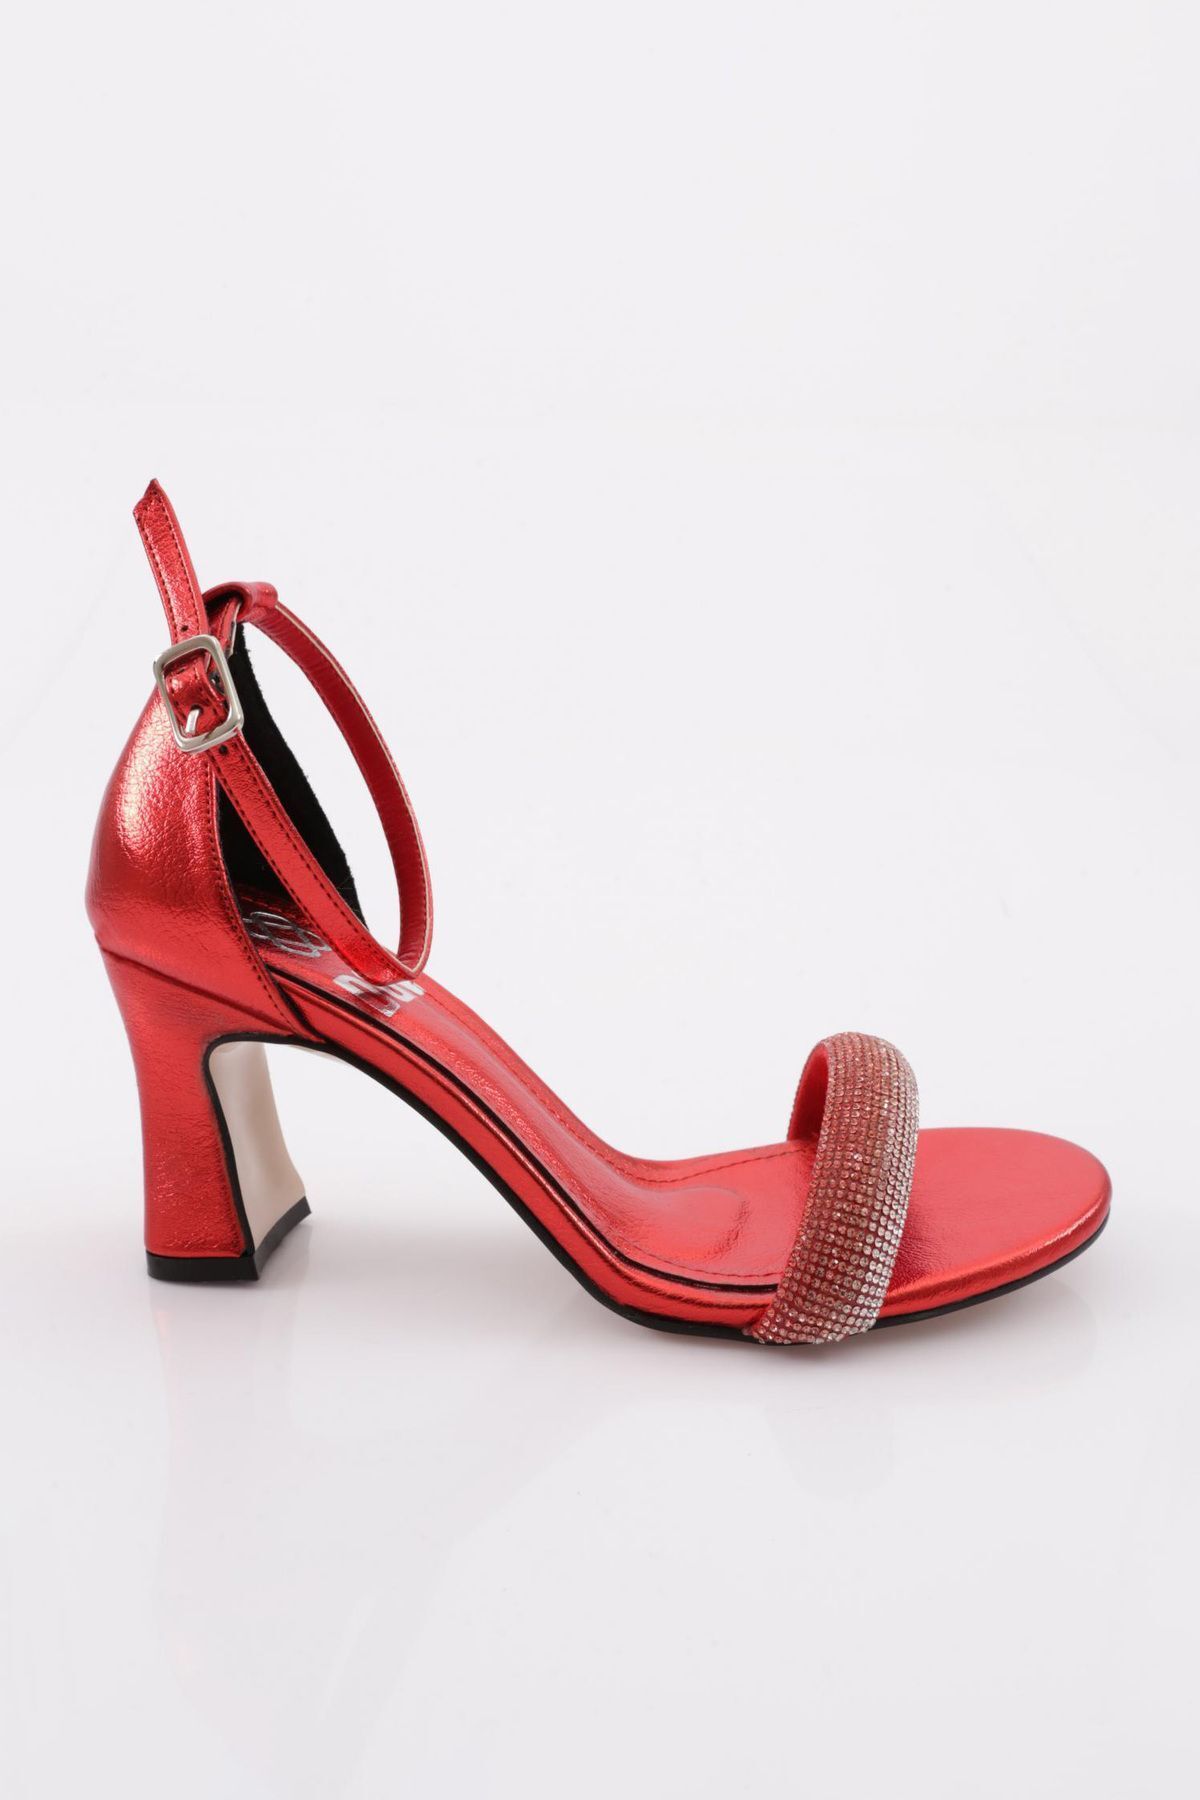 Dgn 7551 Kadın Silver Taşlı Bantlı Topuklu Ayakkabı Kırmızı Metalik